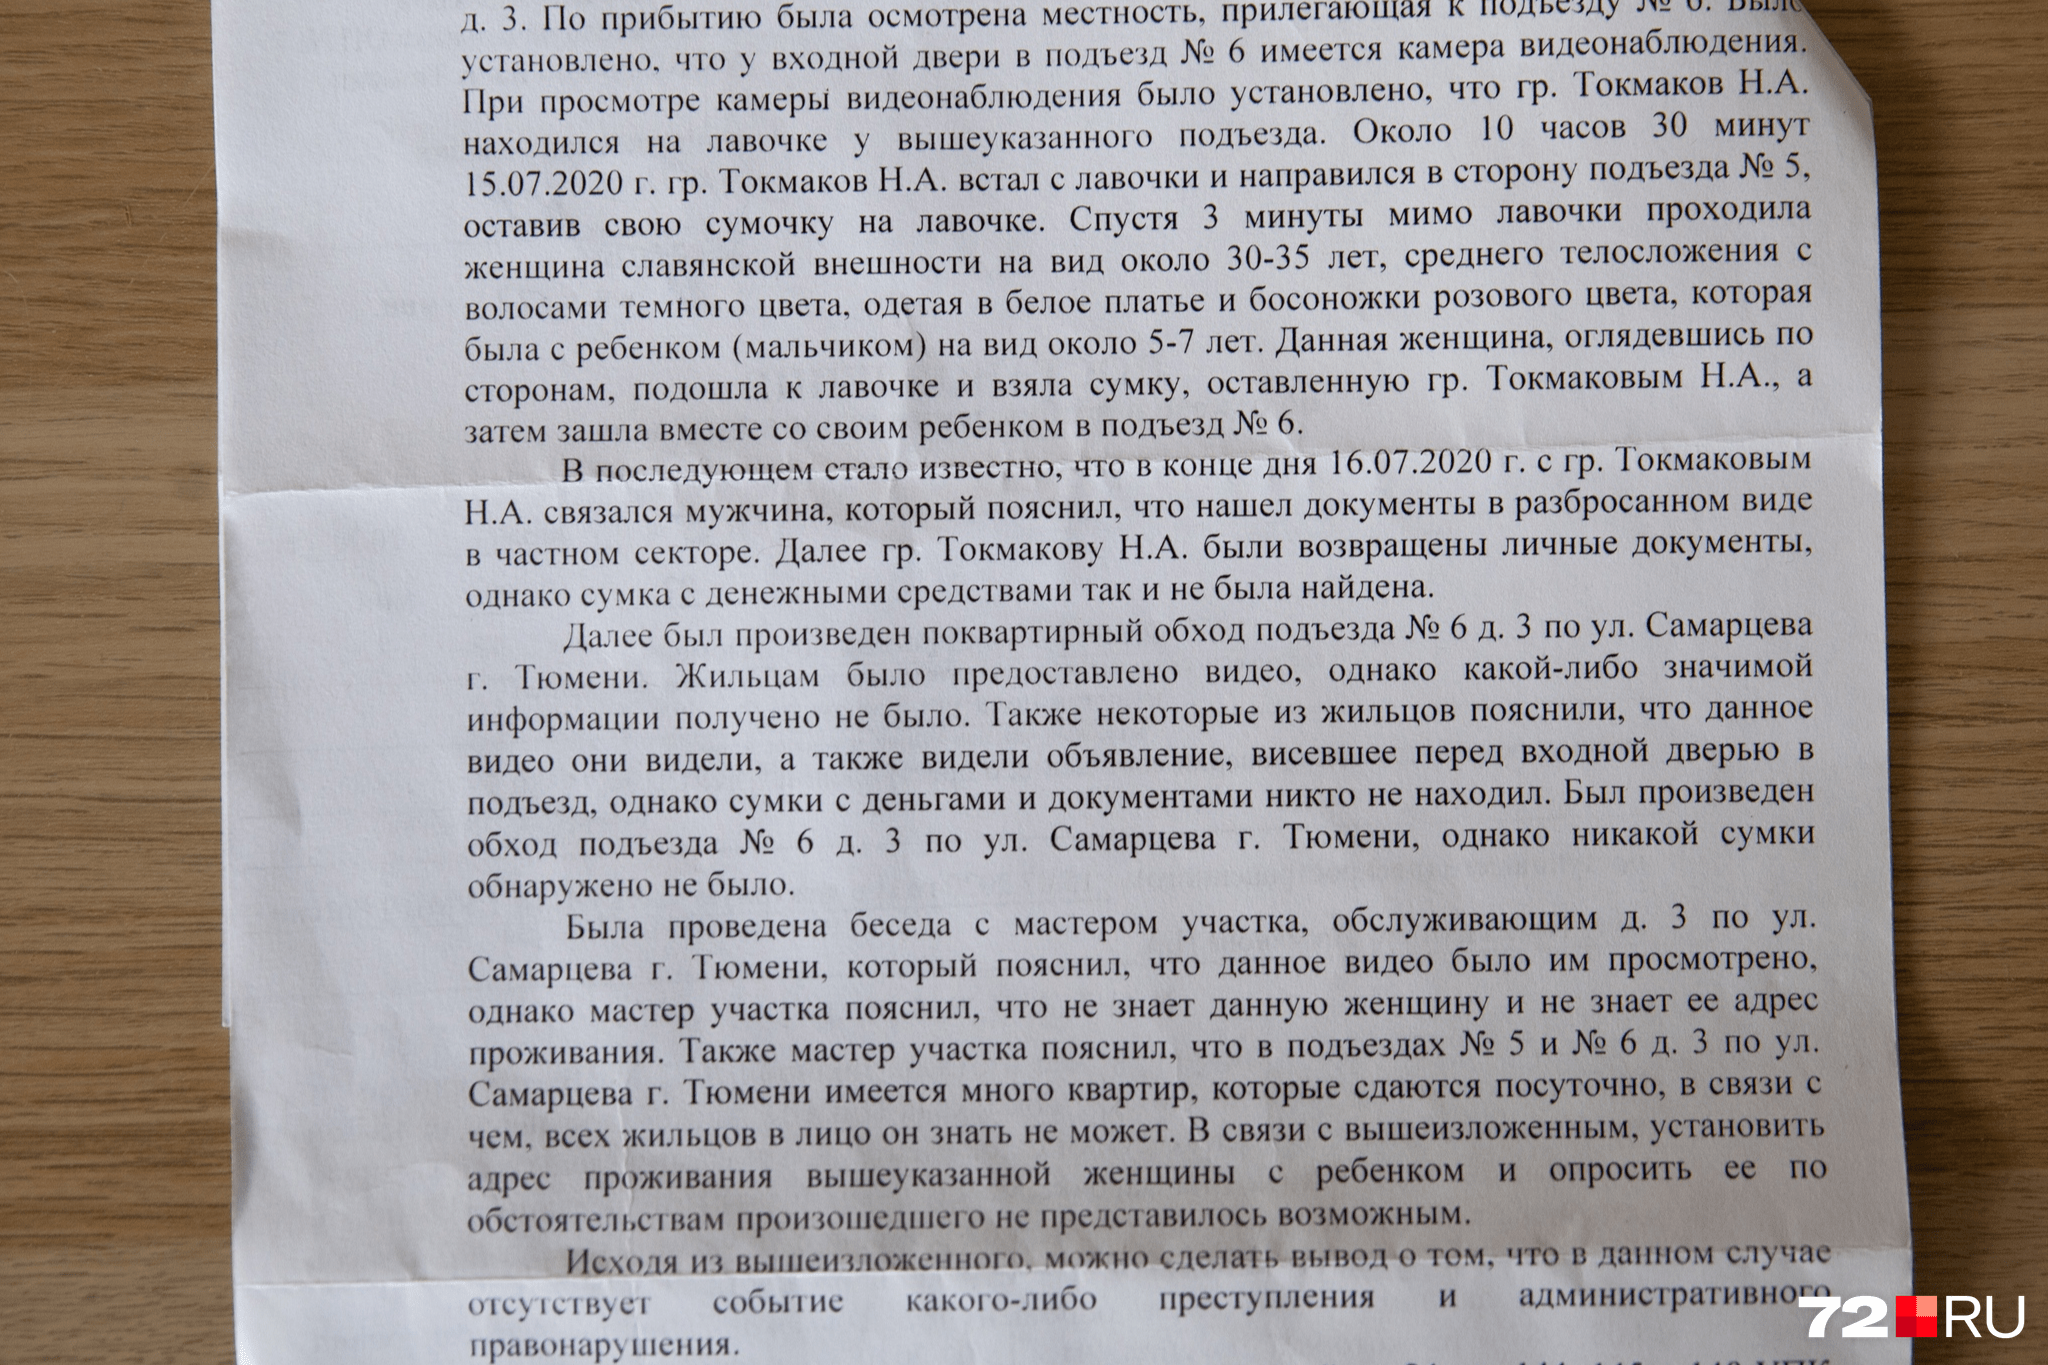 Документ о результатах проверки, который пришел Токмаковым 